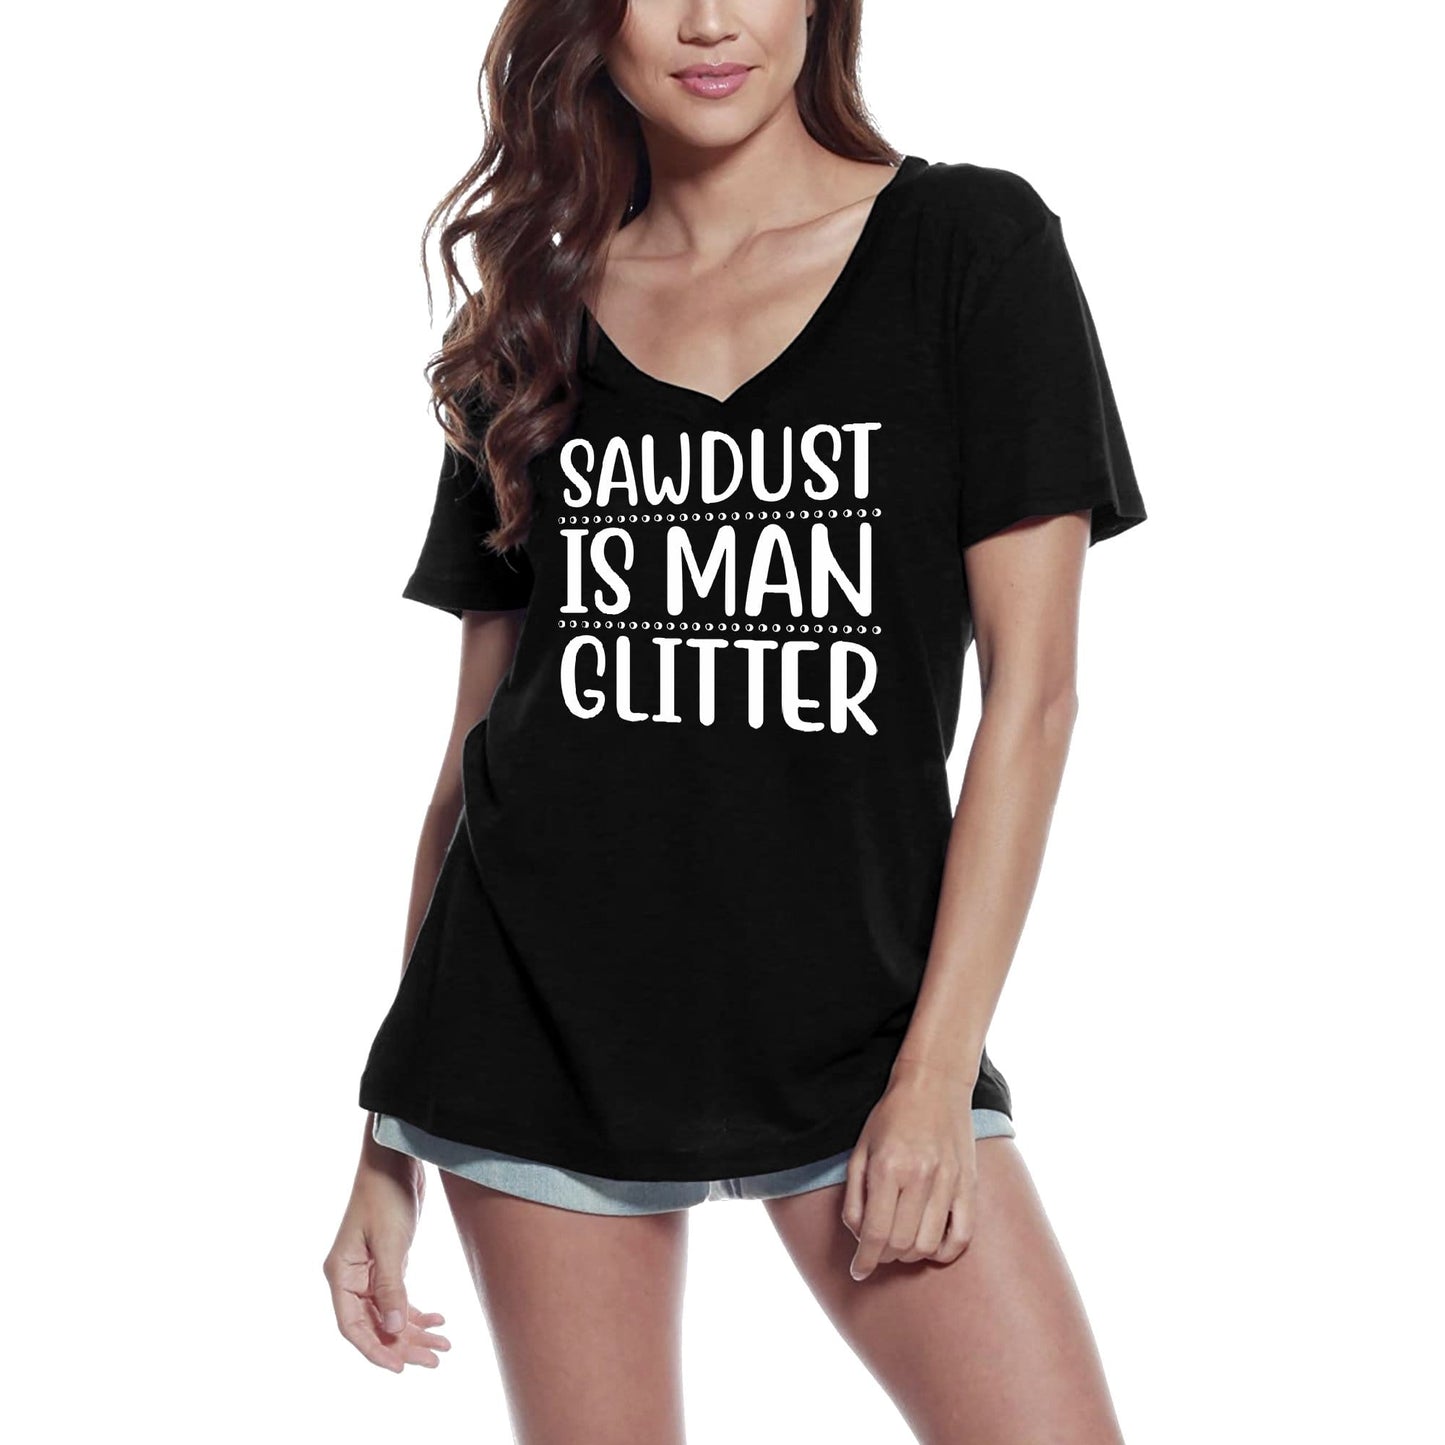 ULTRABASIC Women's T-Shirt Sawdust is Man Glitter - Short Sleeve Tee Shirt Tops